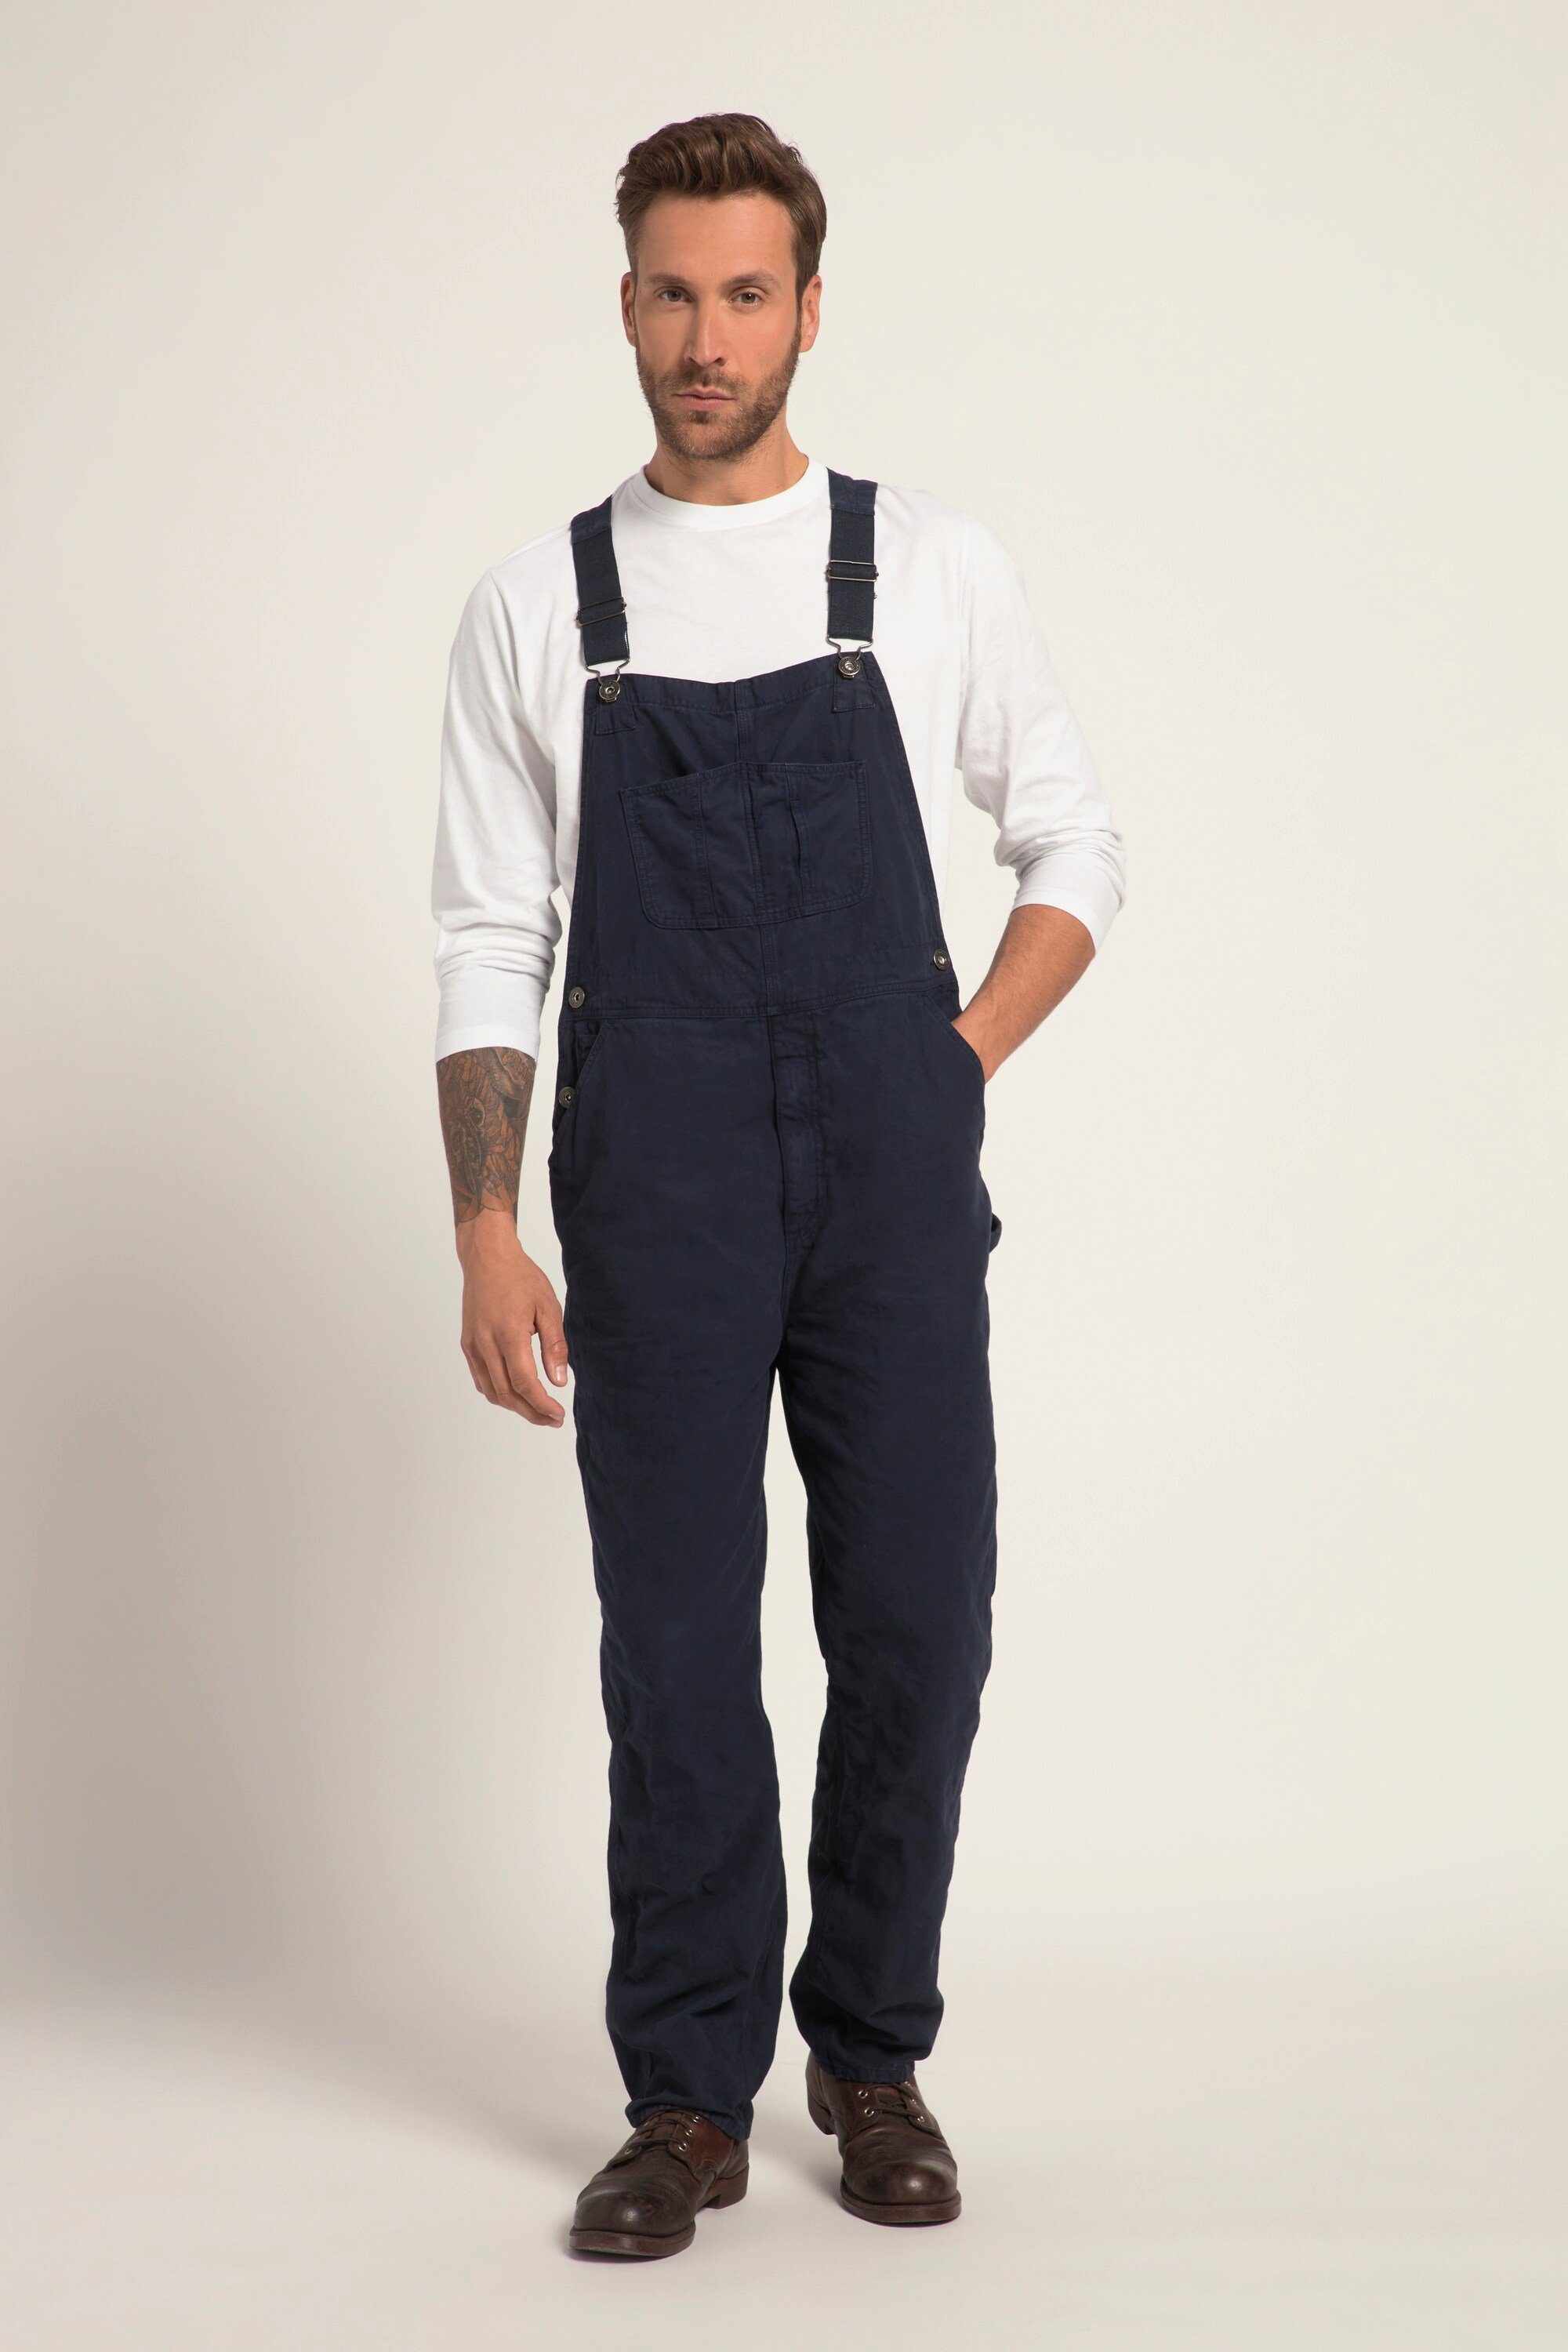 JP1880 5-Pocket-Jeans Latzhose Workwear elastische Träger viele Taschen navy blau